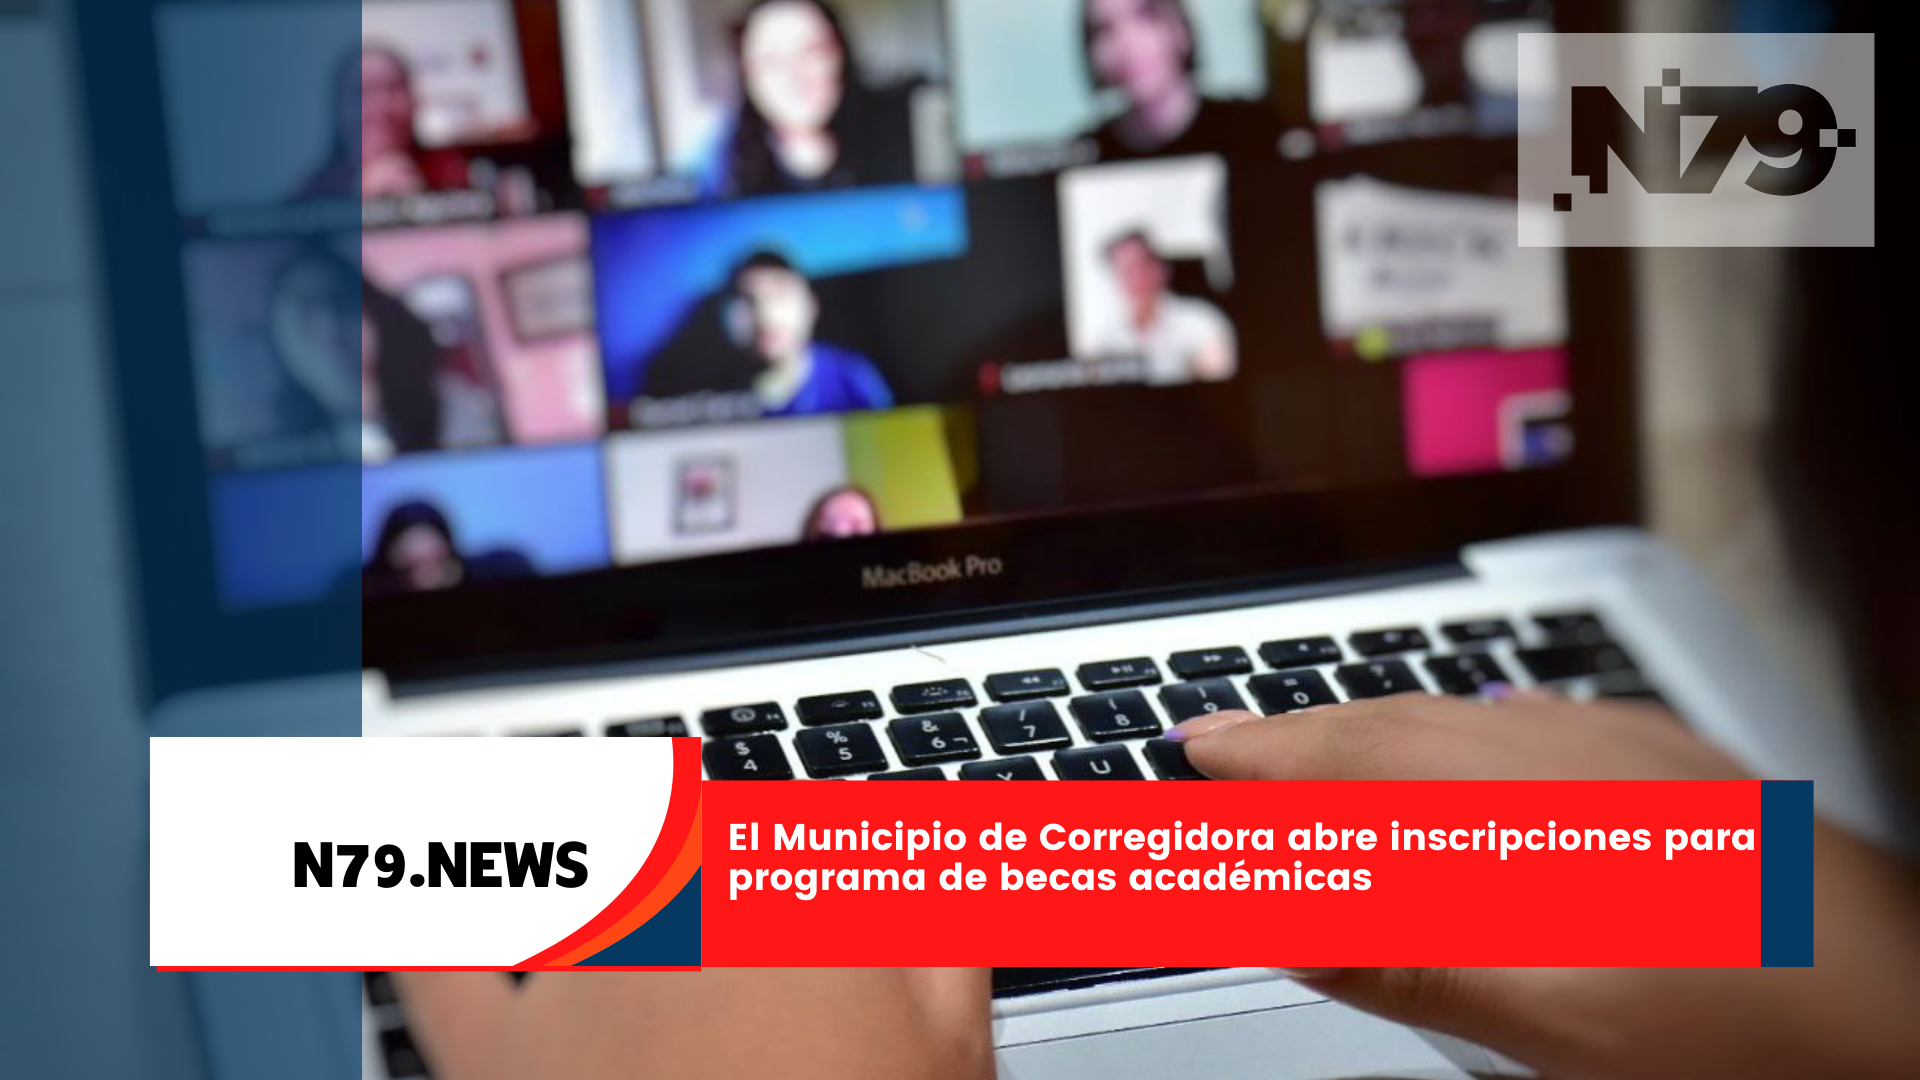 El Municipio de Corregidora abre inscripciones para programa de becas académicas